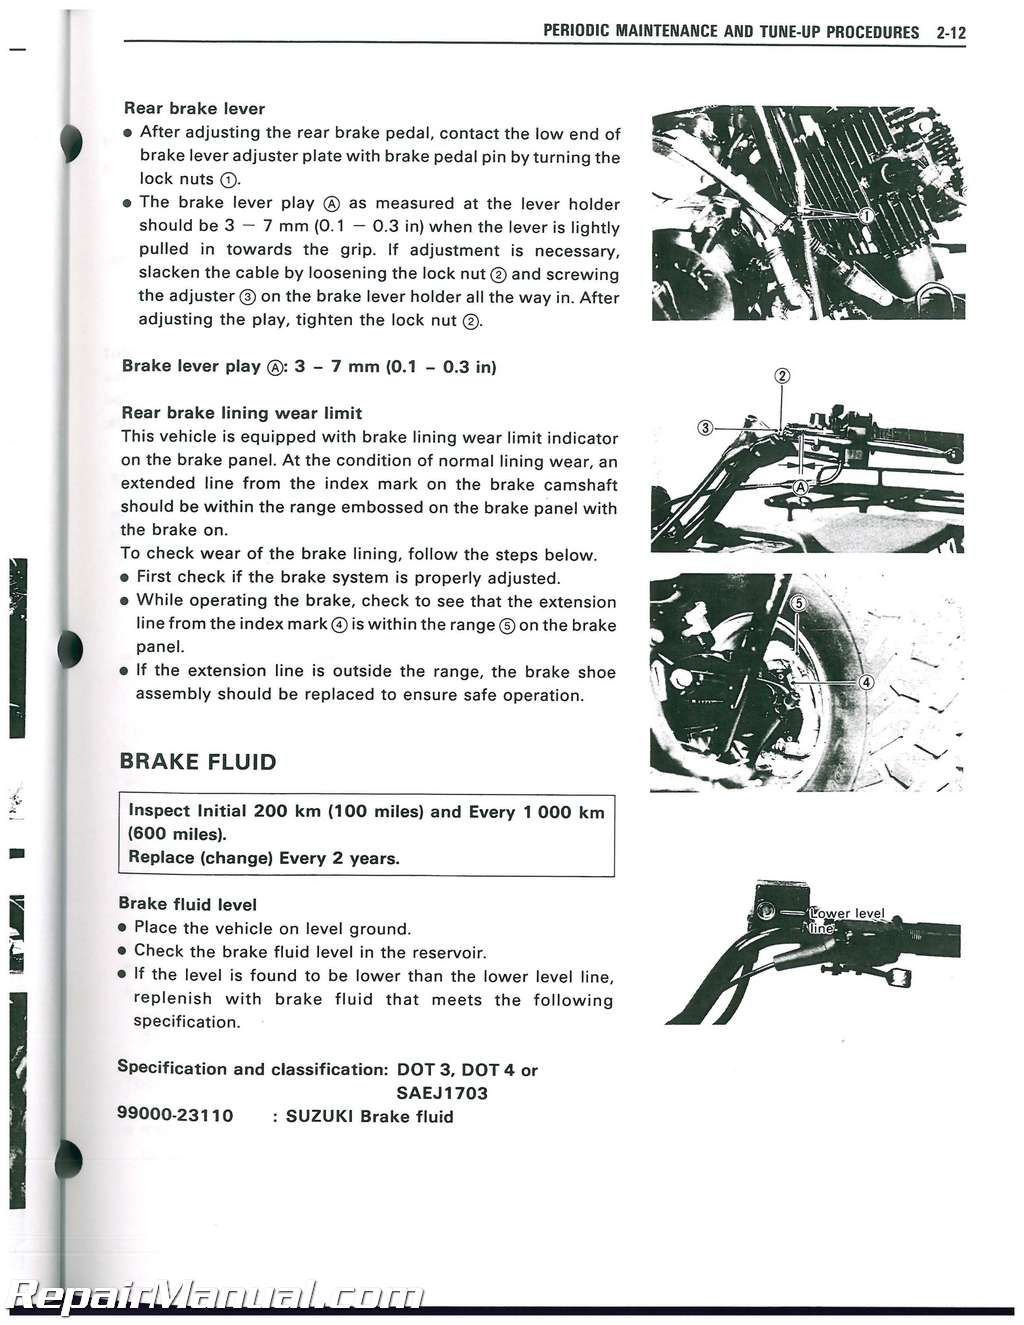 1988 suzuki quadrunner 250 manual